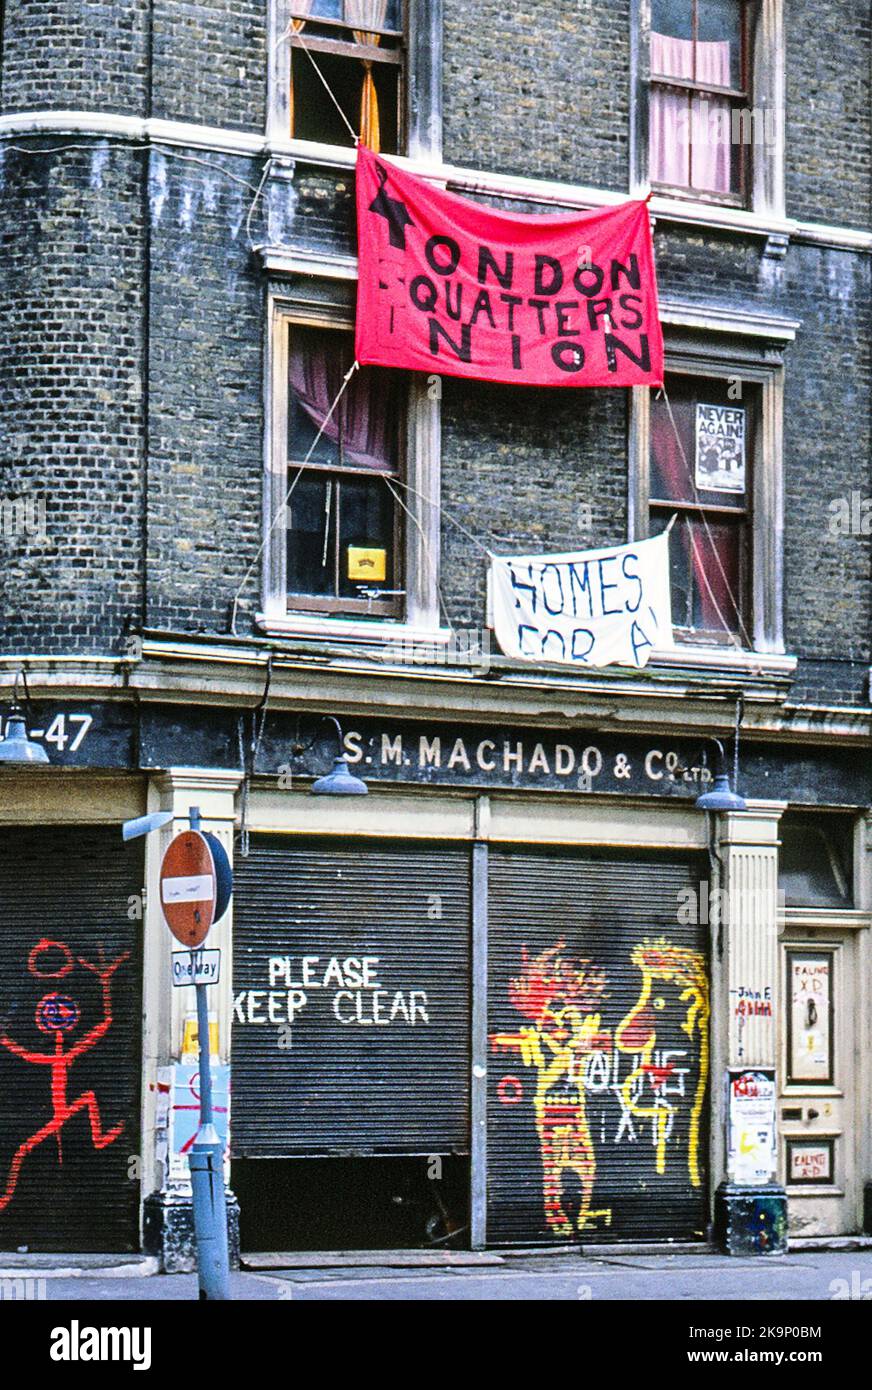 London squatter Union a illégalement pris le contrôle d'une propriété vide à Londres en 1980. La Grande-Bretagne de Thatcher et les troubles sociaux. Banque D'Images